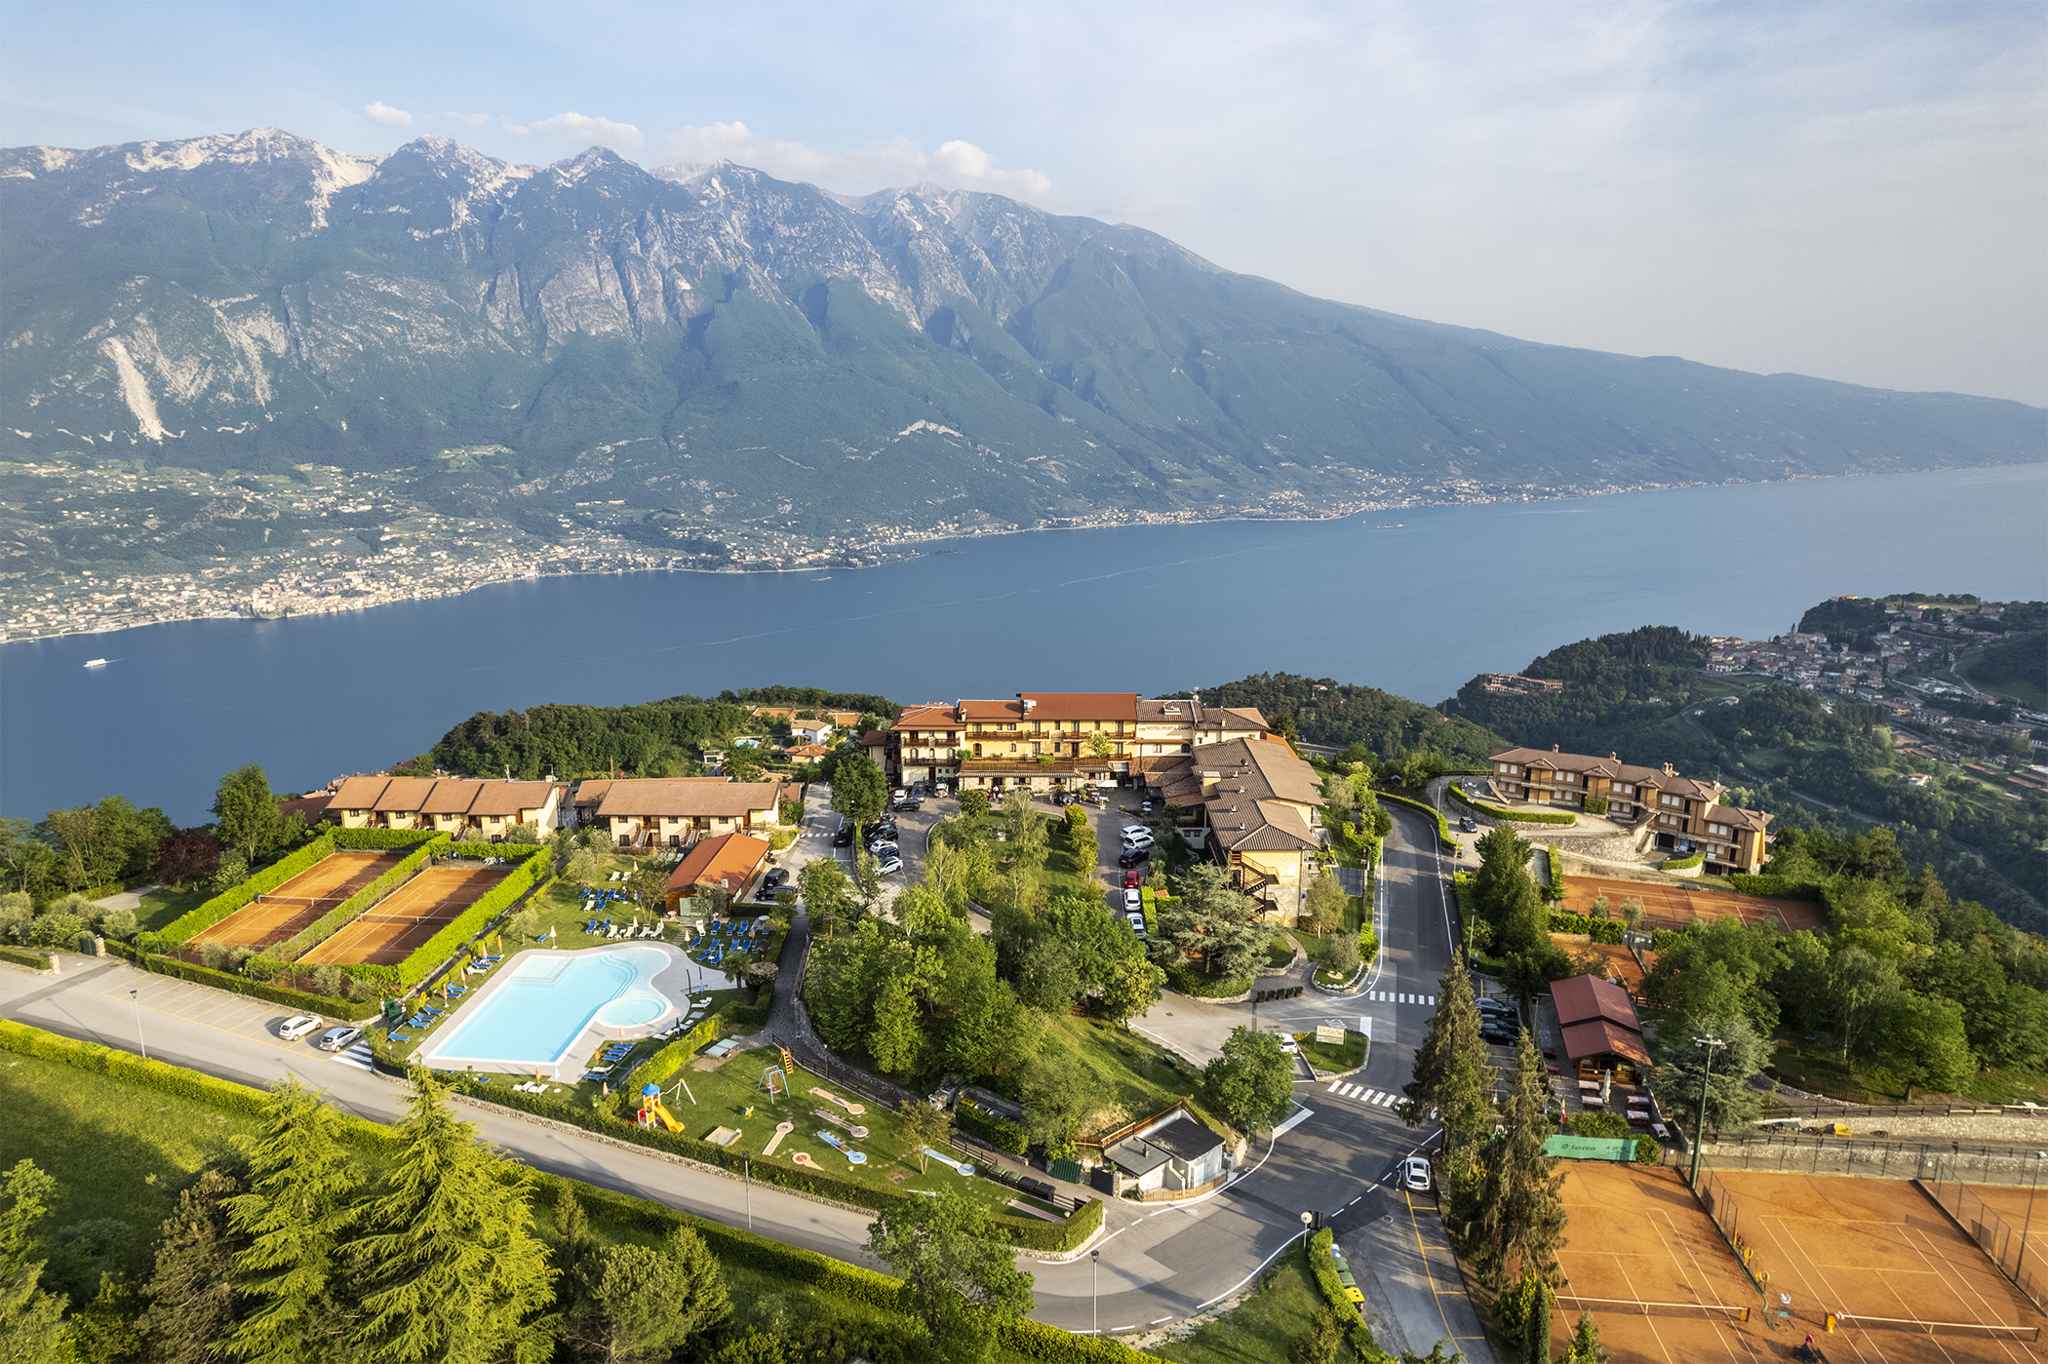 Ferienwohnung mit Pool  in Italien